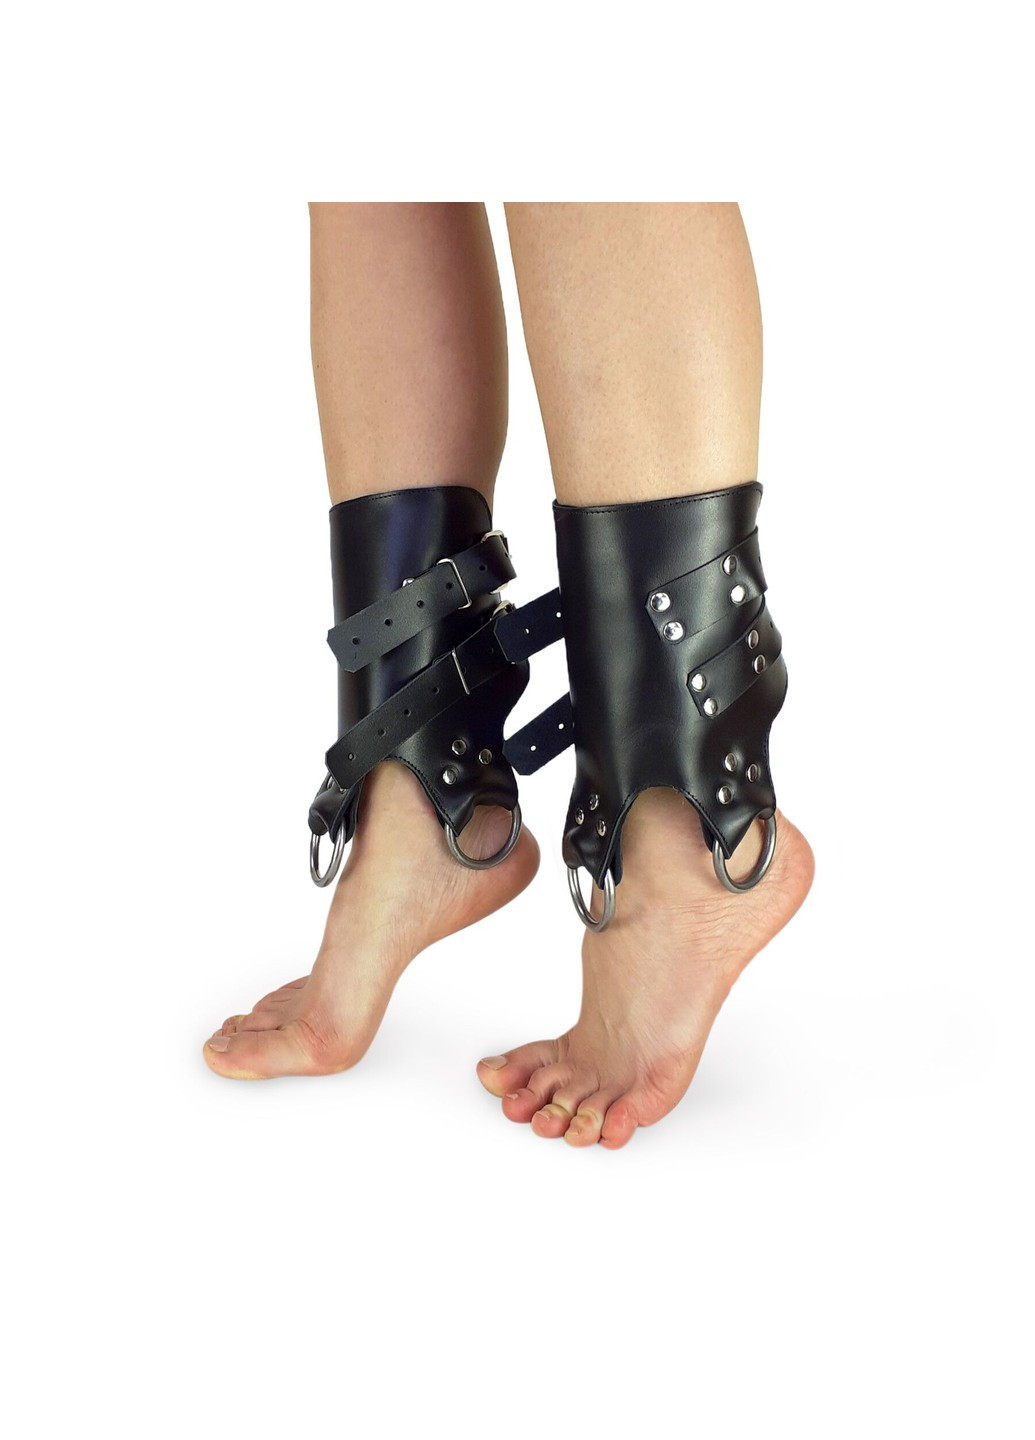 Поножи манжеты для подвеса за ноги Leg Cuffs For Suspension из натуральной кожи, цвет черный Art of Sex (252383261)